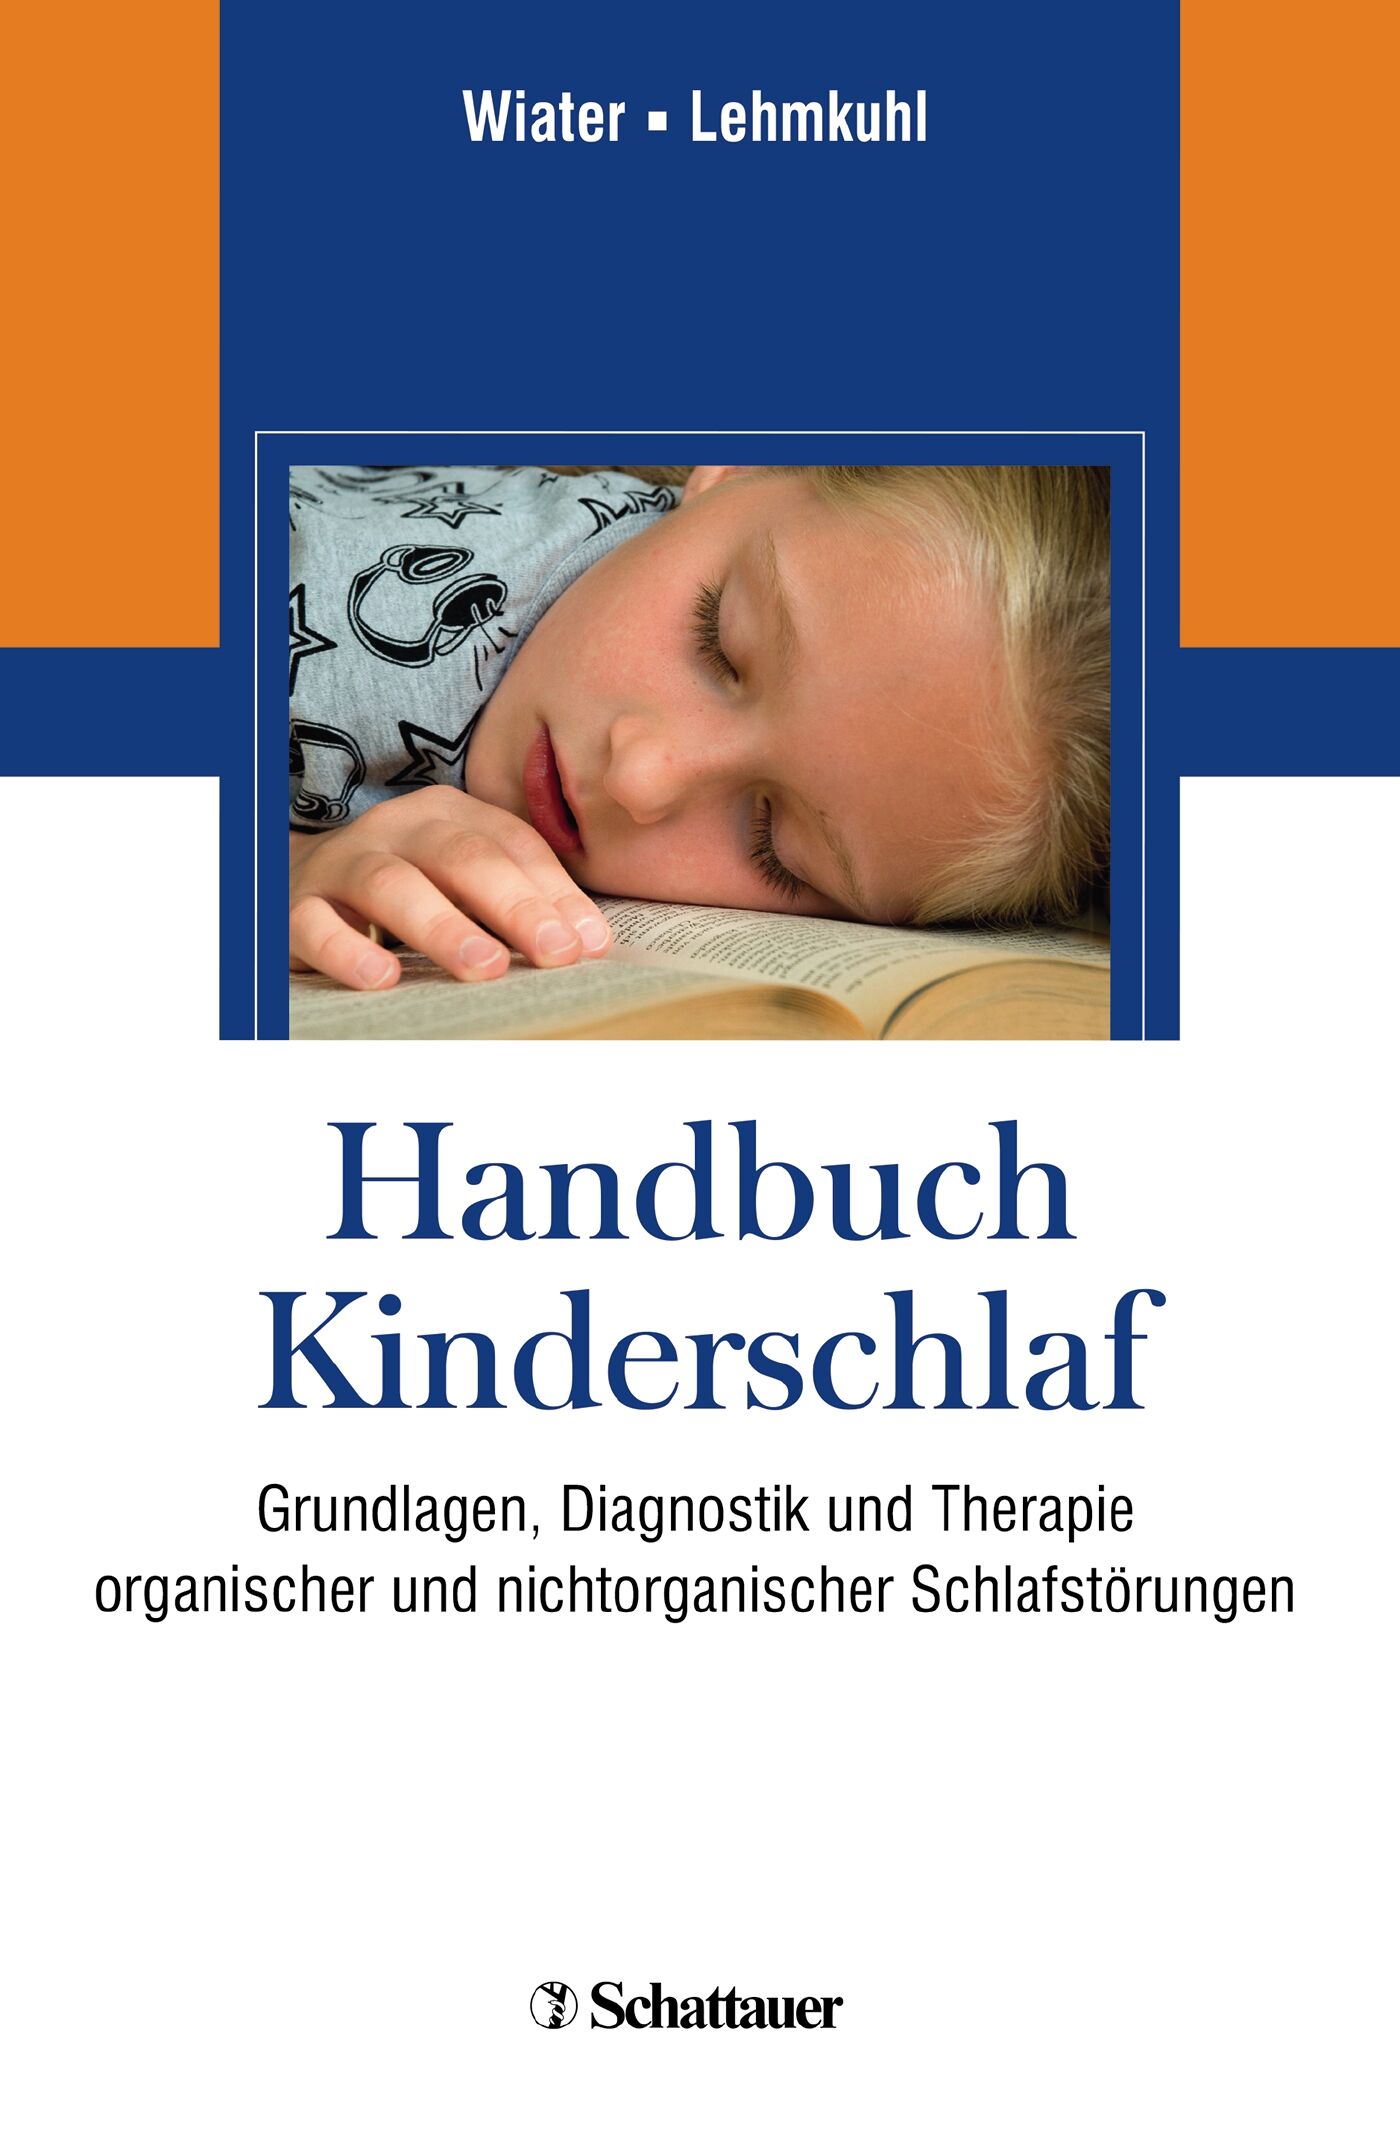 Handbuch des Kinderschlafs, 9783794565856